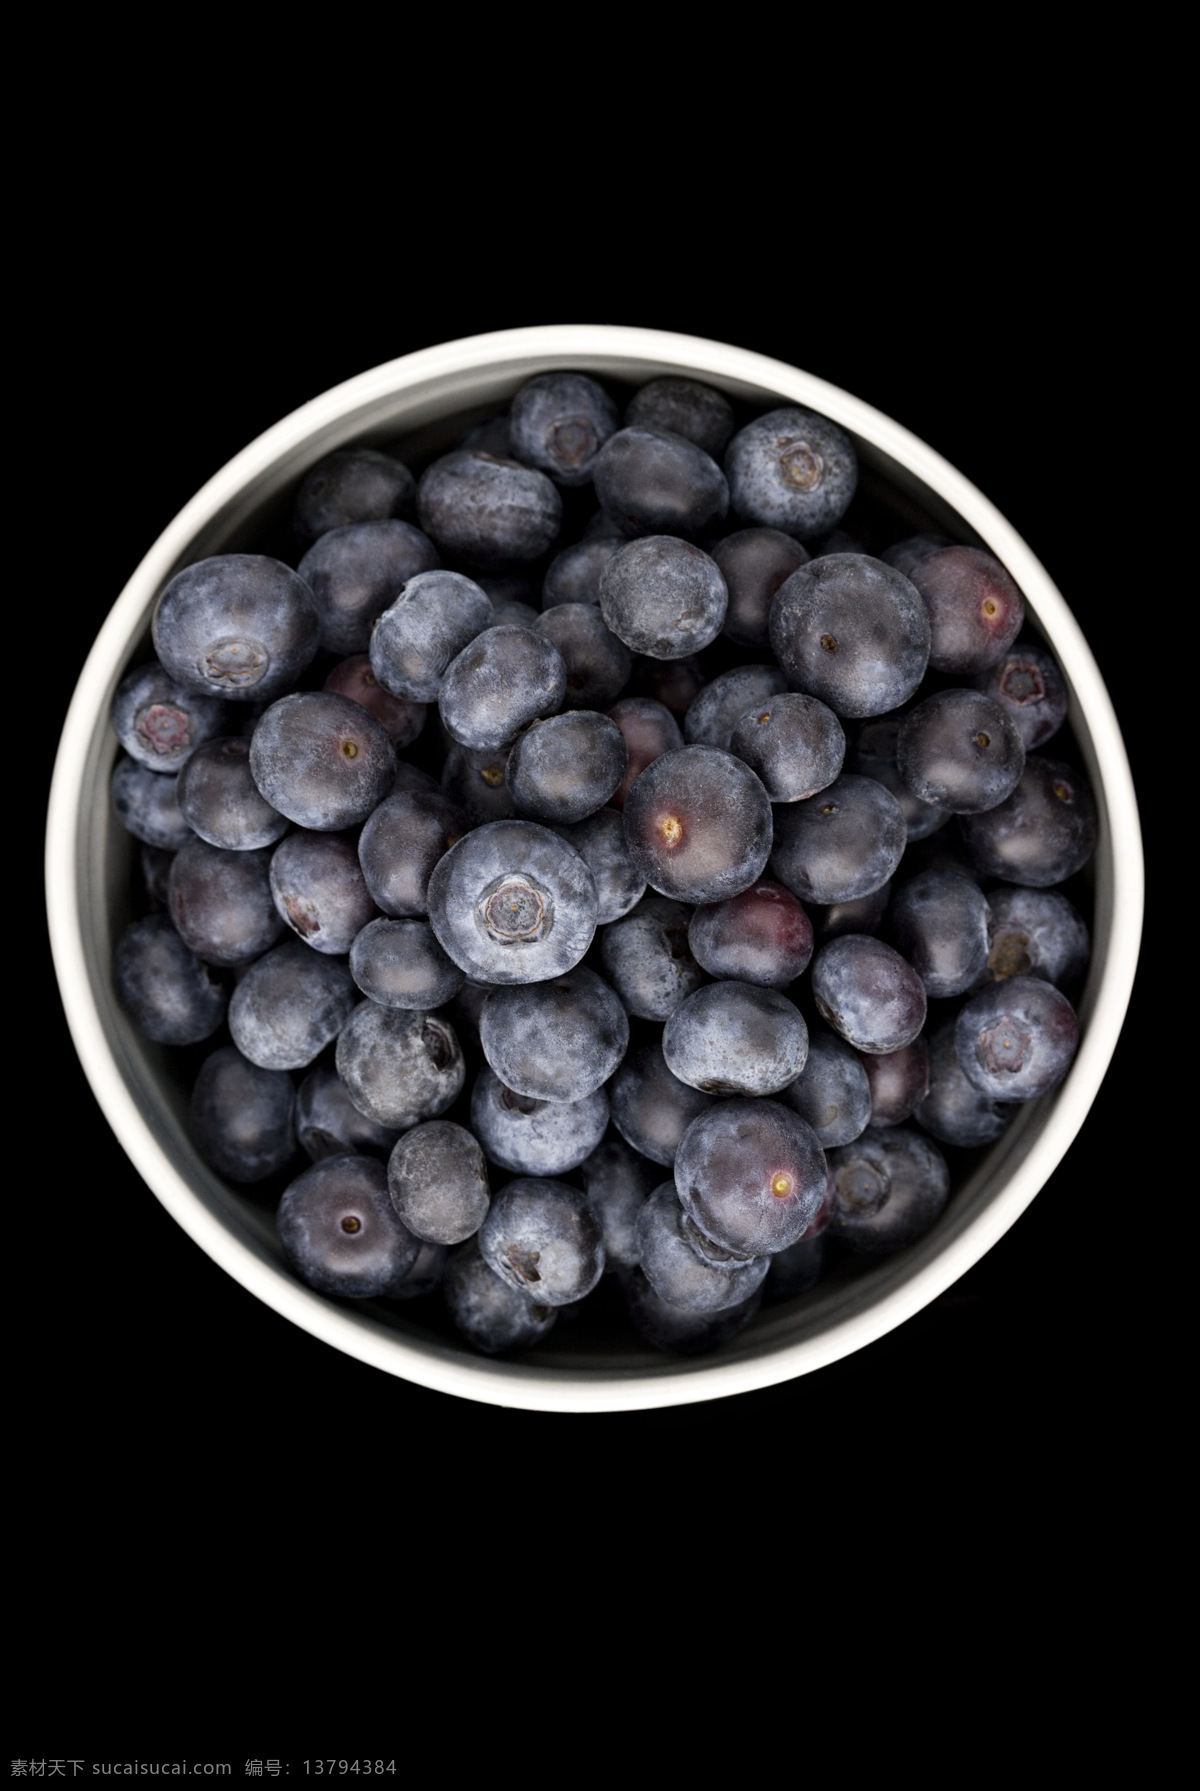 新鲜 蓝莓 新鲜水果 果实 蔬菜图片 餐饮美食